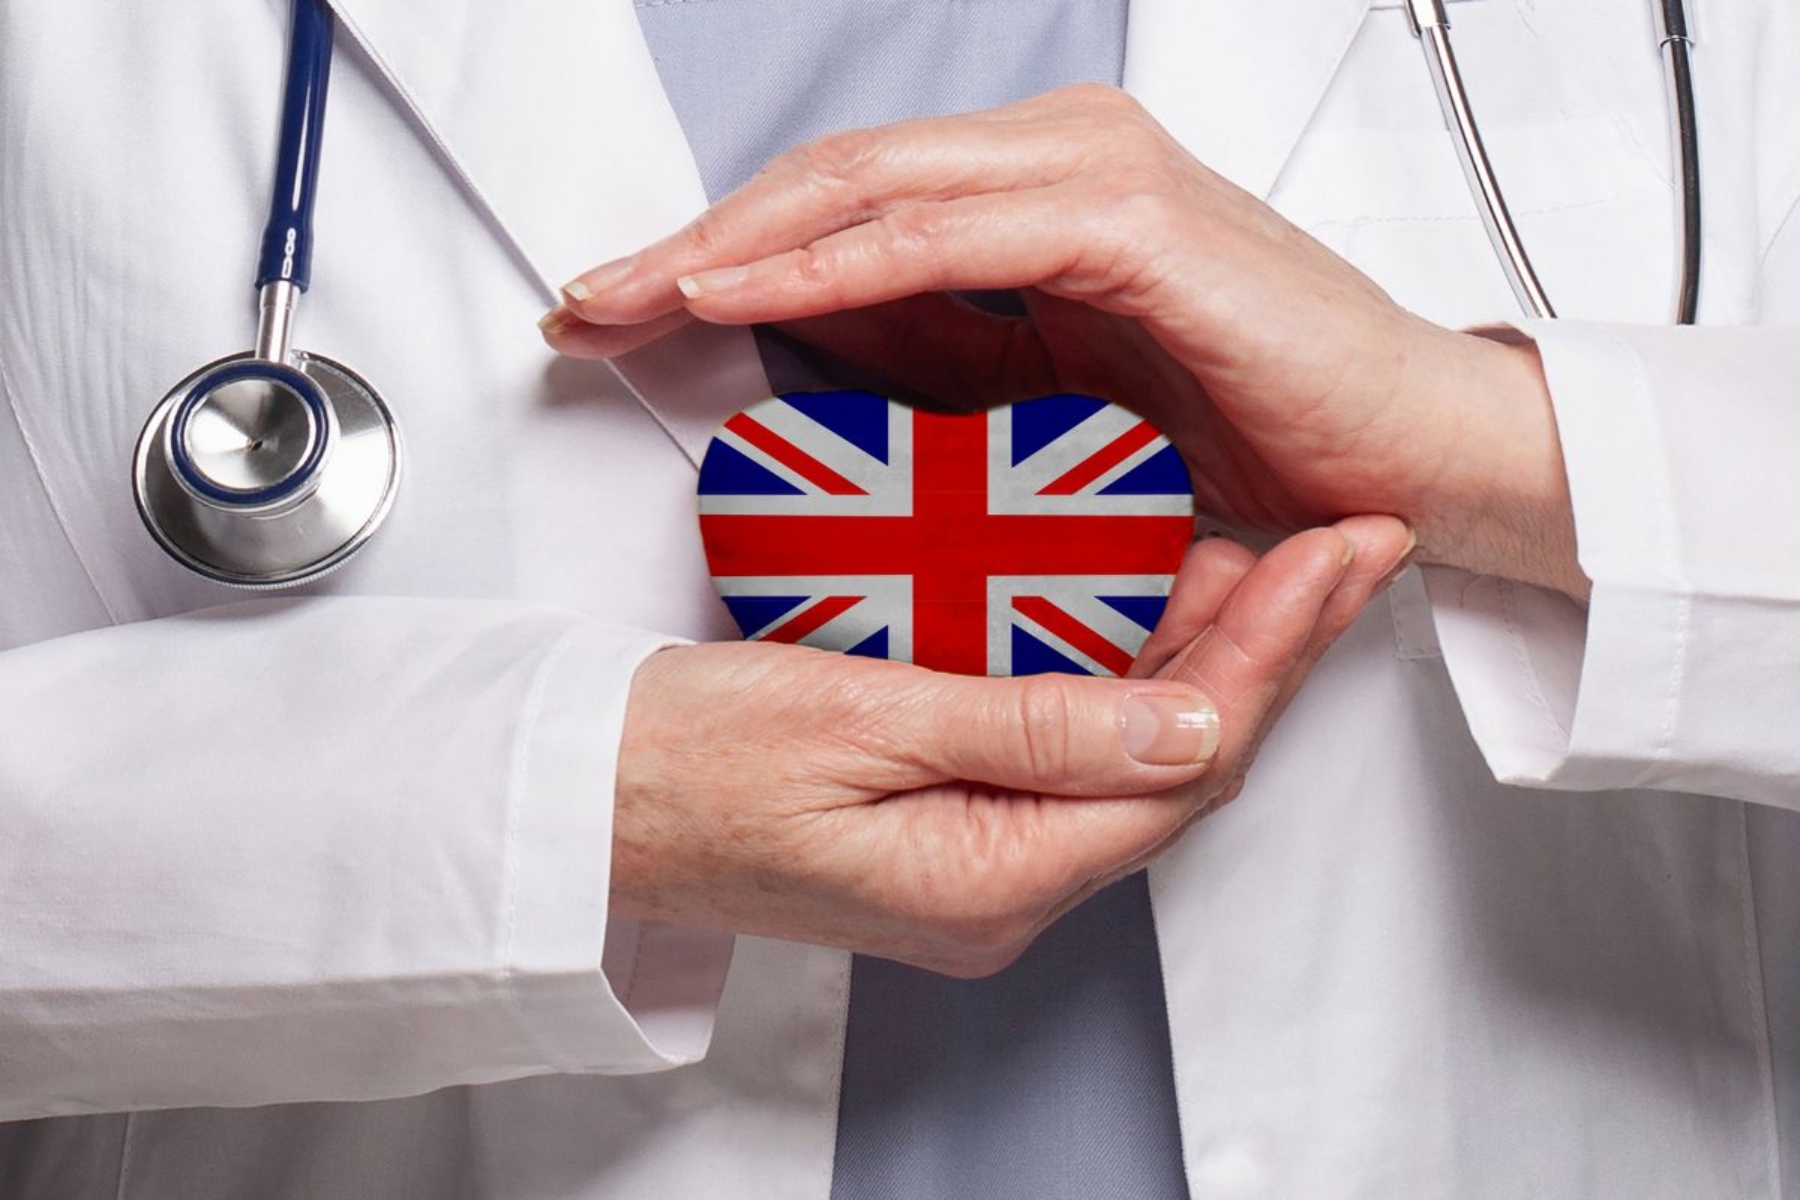 Ηνωμένο Βασίλειο: Τεράστια μείωση στις αιτήσεις για βίζα υγειονομικής περίθαλψης